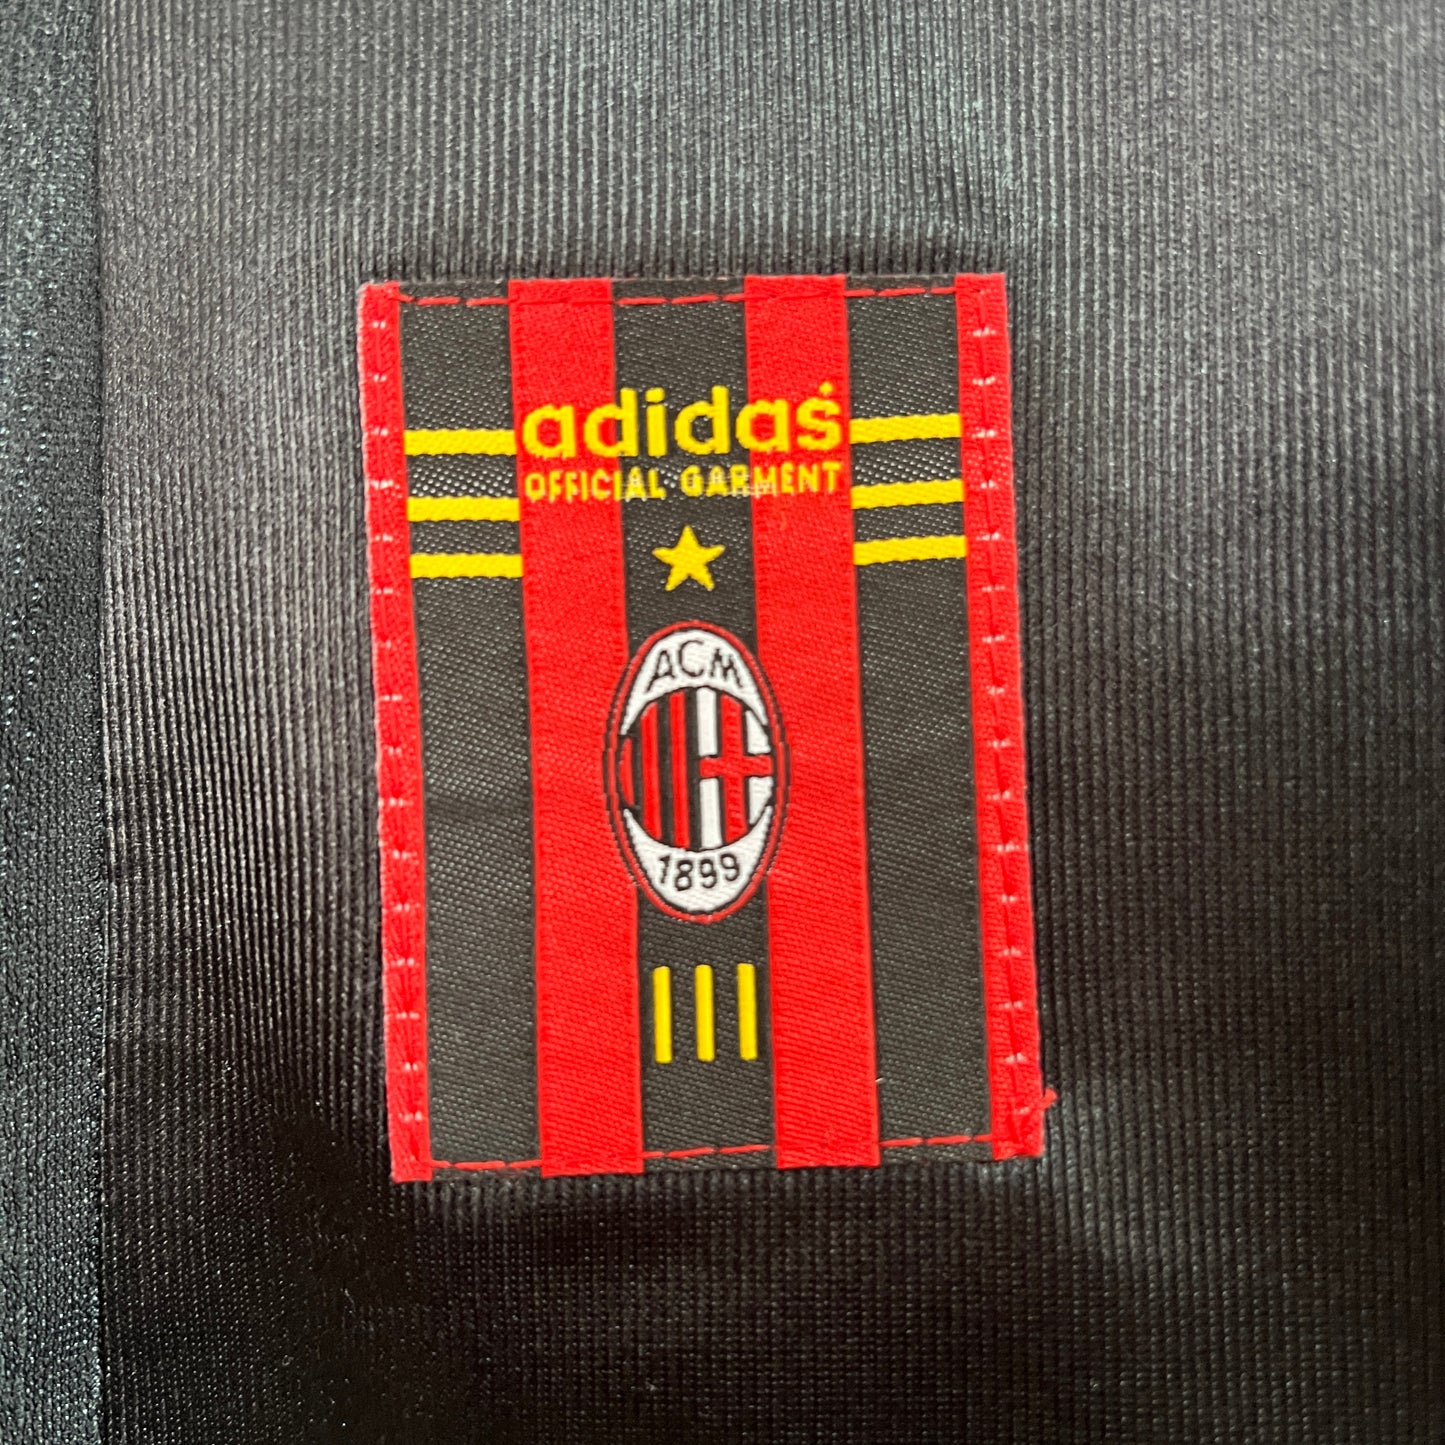 Retro AC Milan 98/99 Third Kit